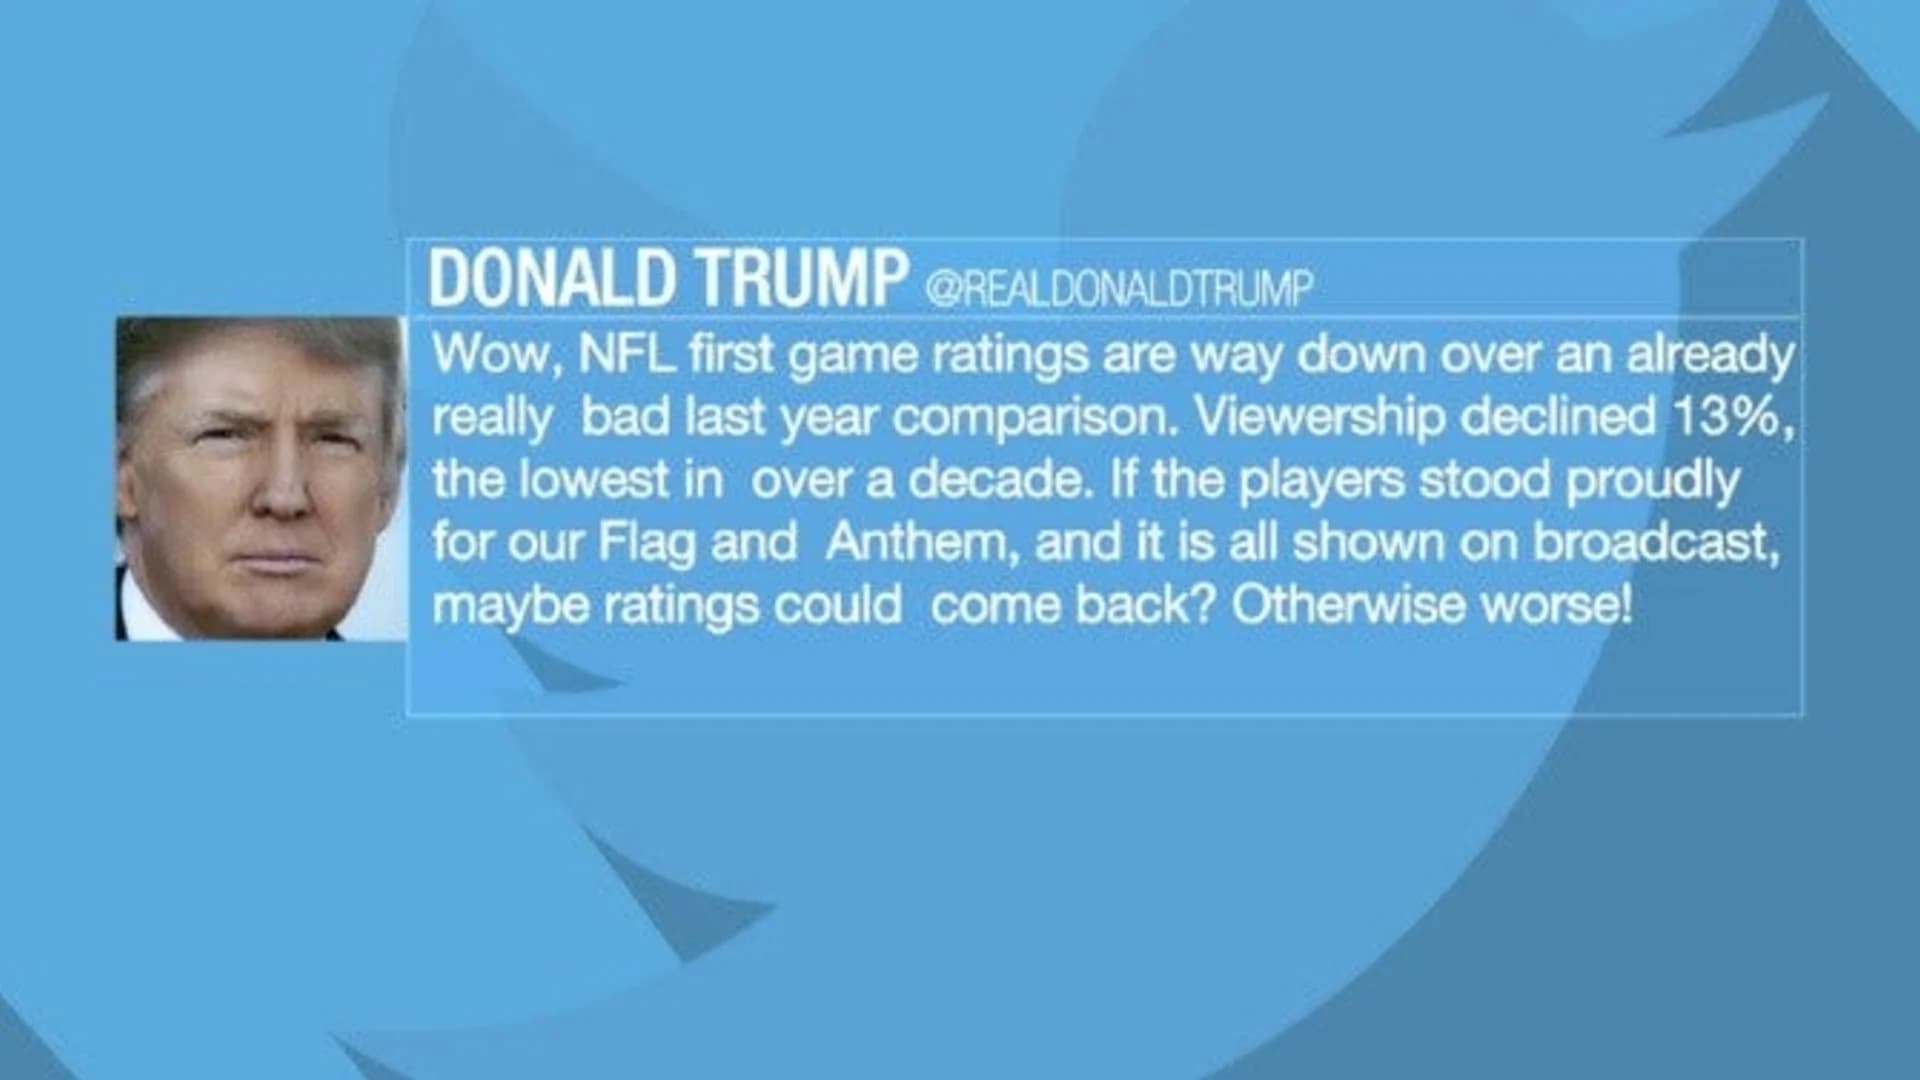 President Trump takes shot at NFL ratings in tweet